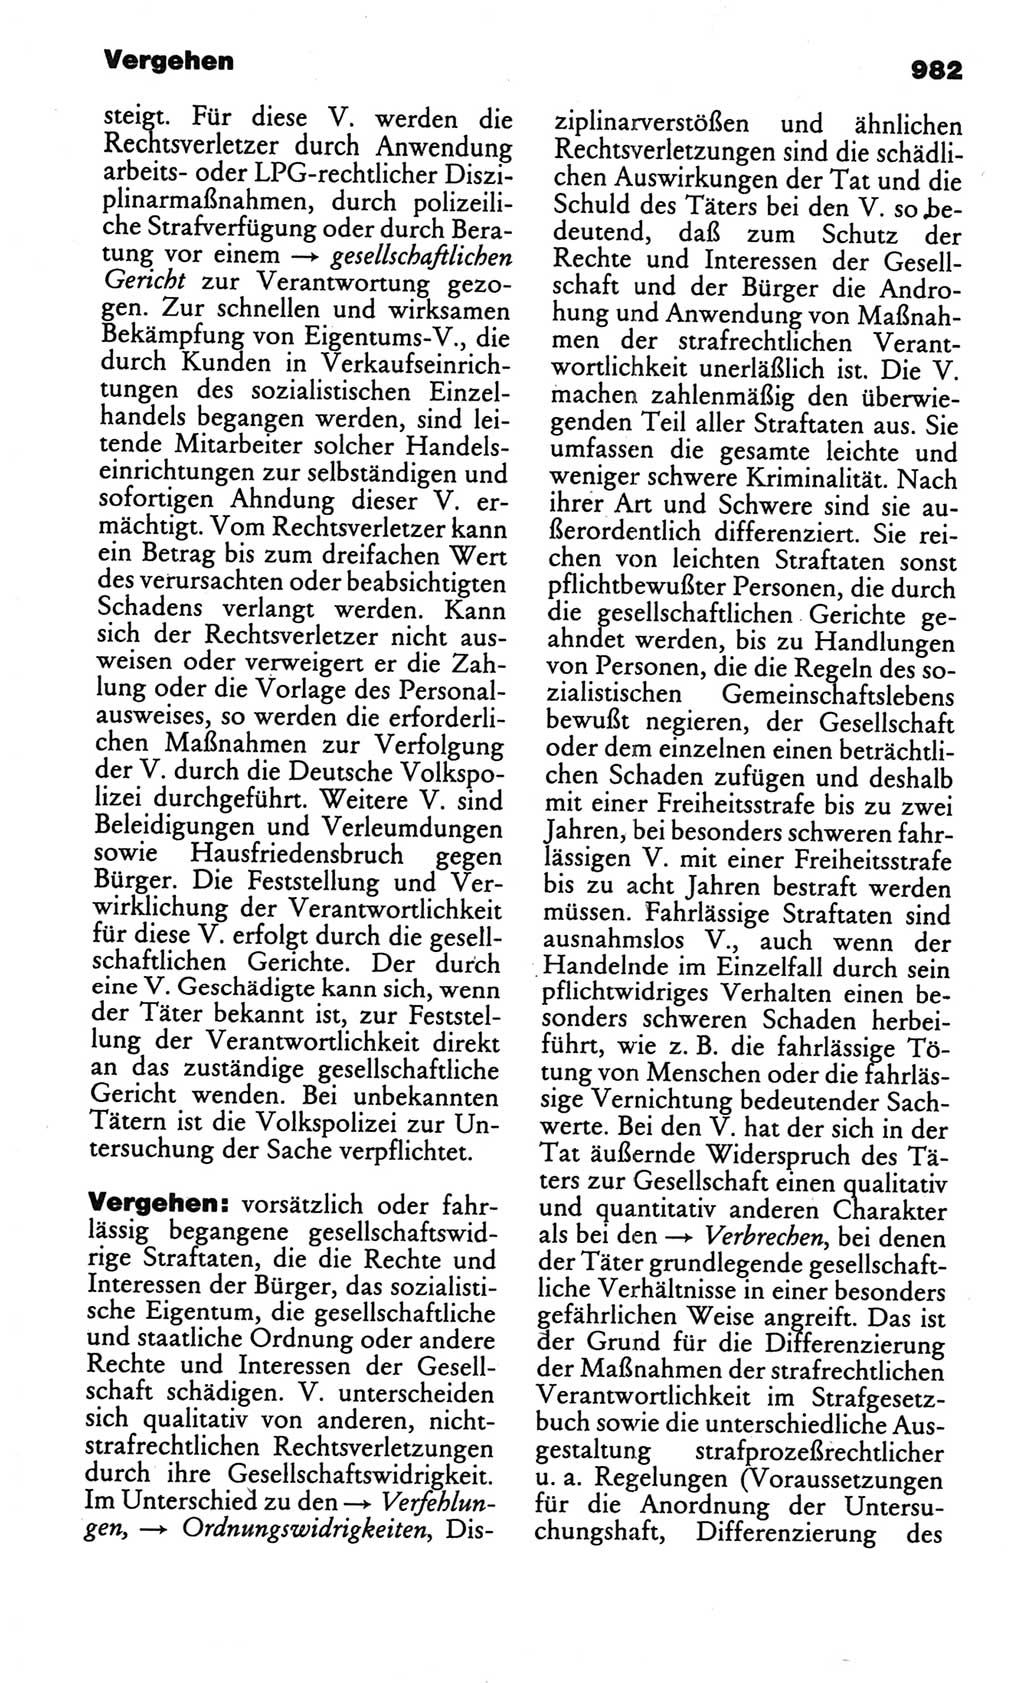 Kleines politisches Wörterbuch [Deutsche Demokratische Republik (DDR)] 1986, Seite 982 (Kl. pol. Wb. DDR 1986, S. 982)